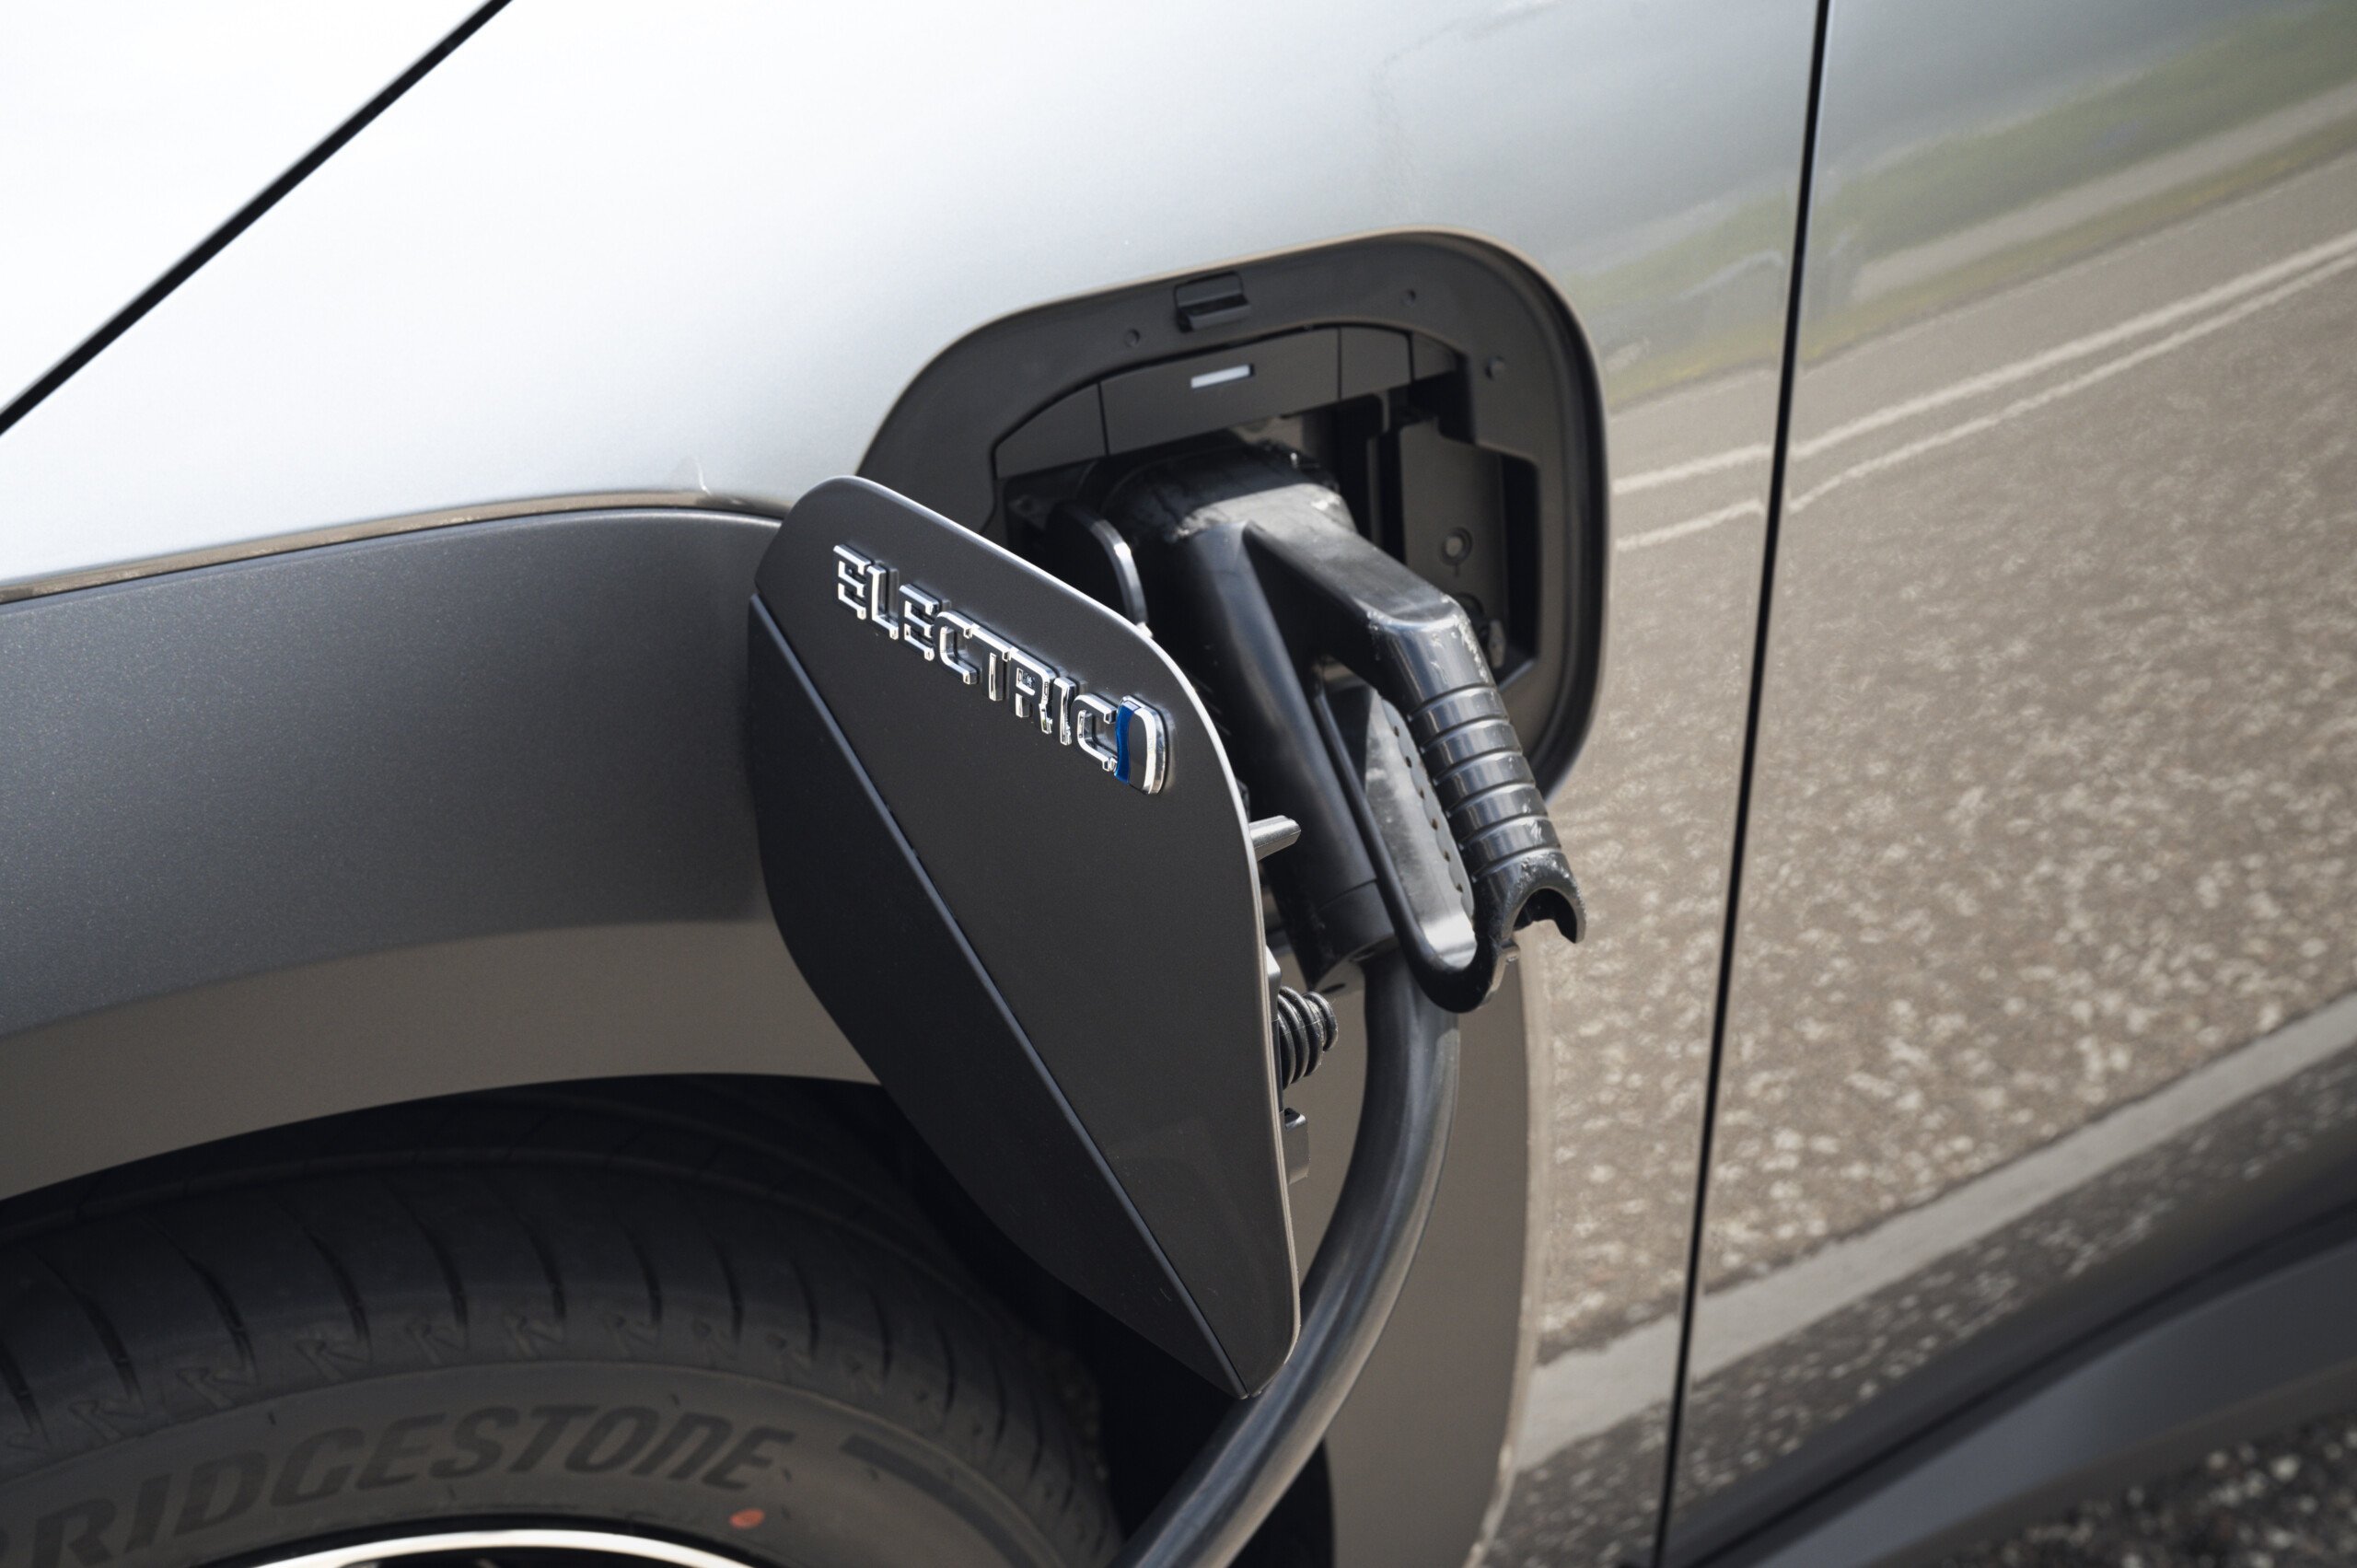 Borne de charge ultra rapide pour voiture électrique : quelles solutions ?